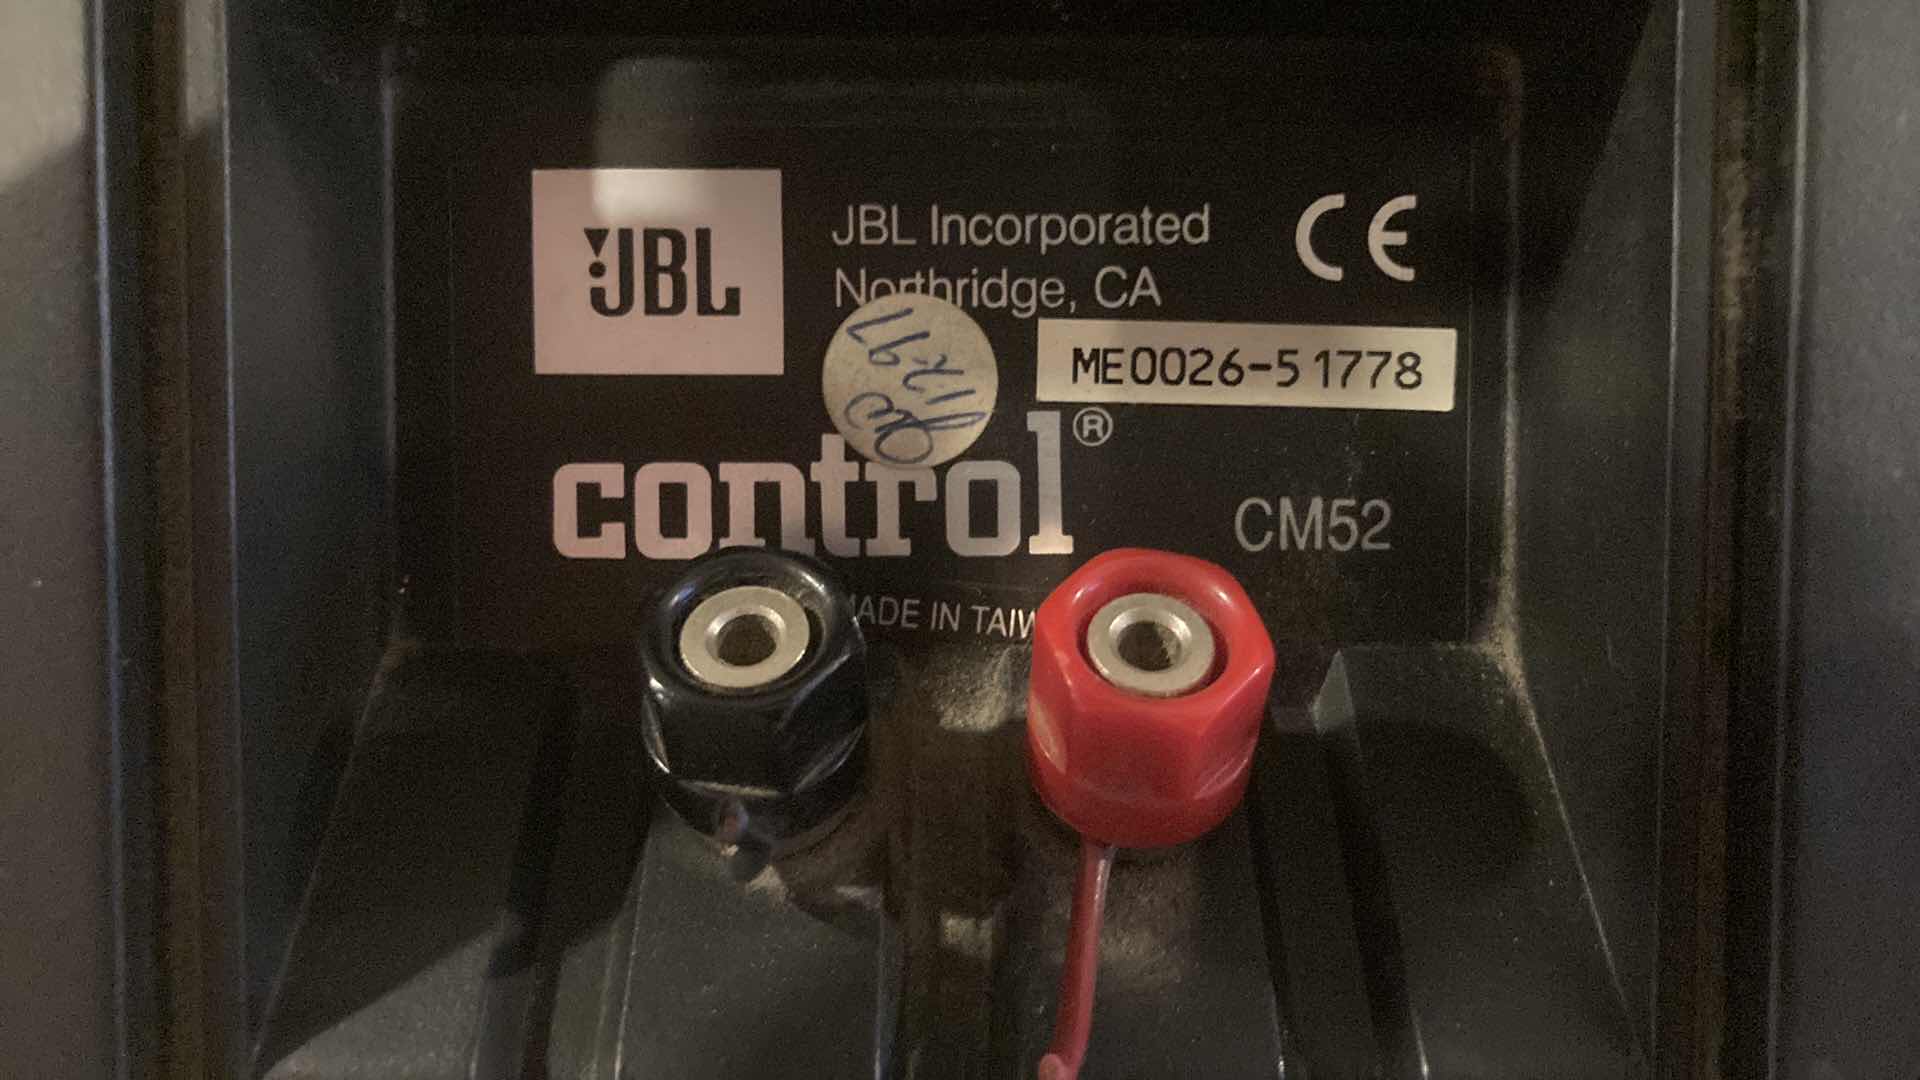 Photo 6 of JBL CONTROL WALL MOUNT SPEAKER MODEL CM52